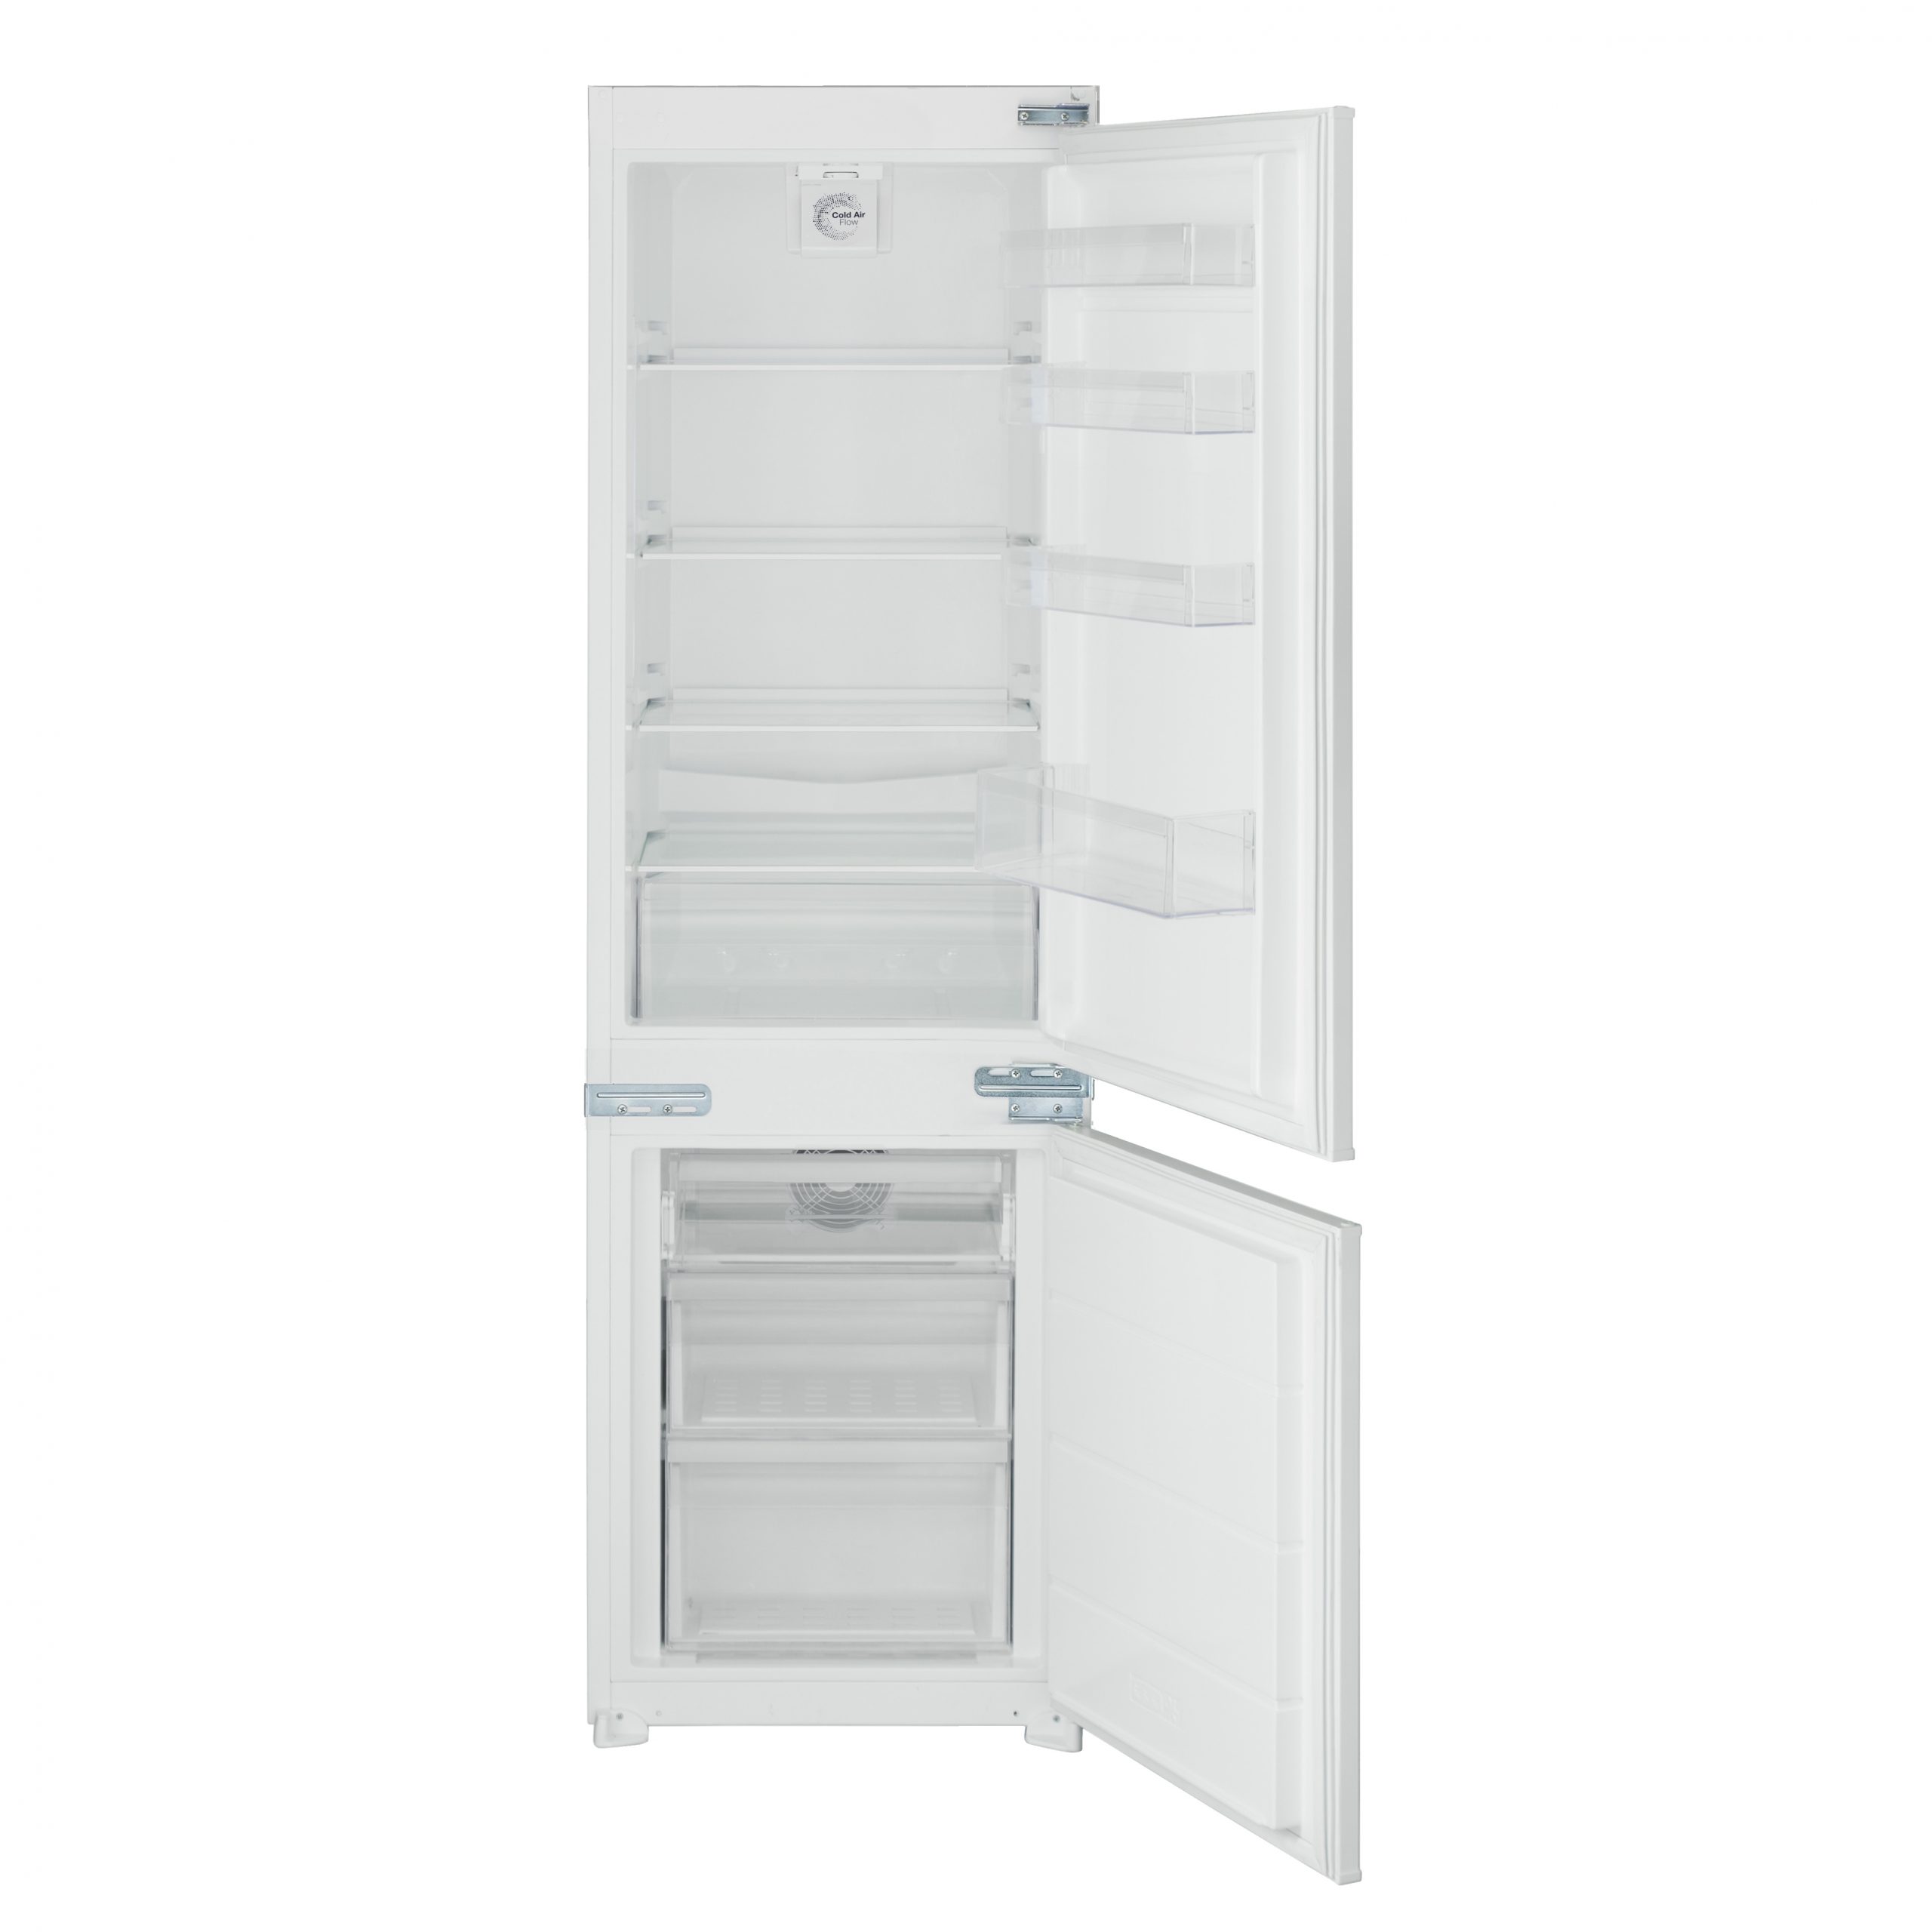 Handle Belling Fridge Freezer Ice Box Door/Fast Freeze Compartment 